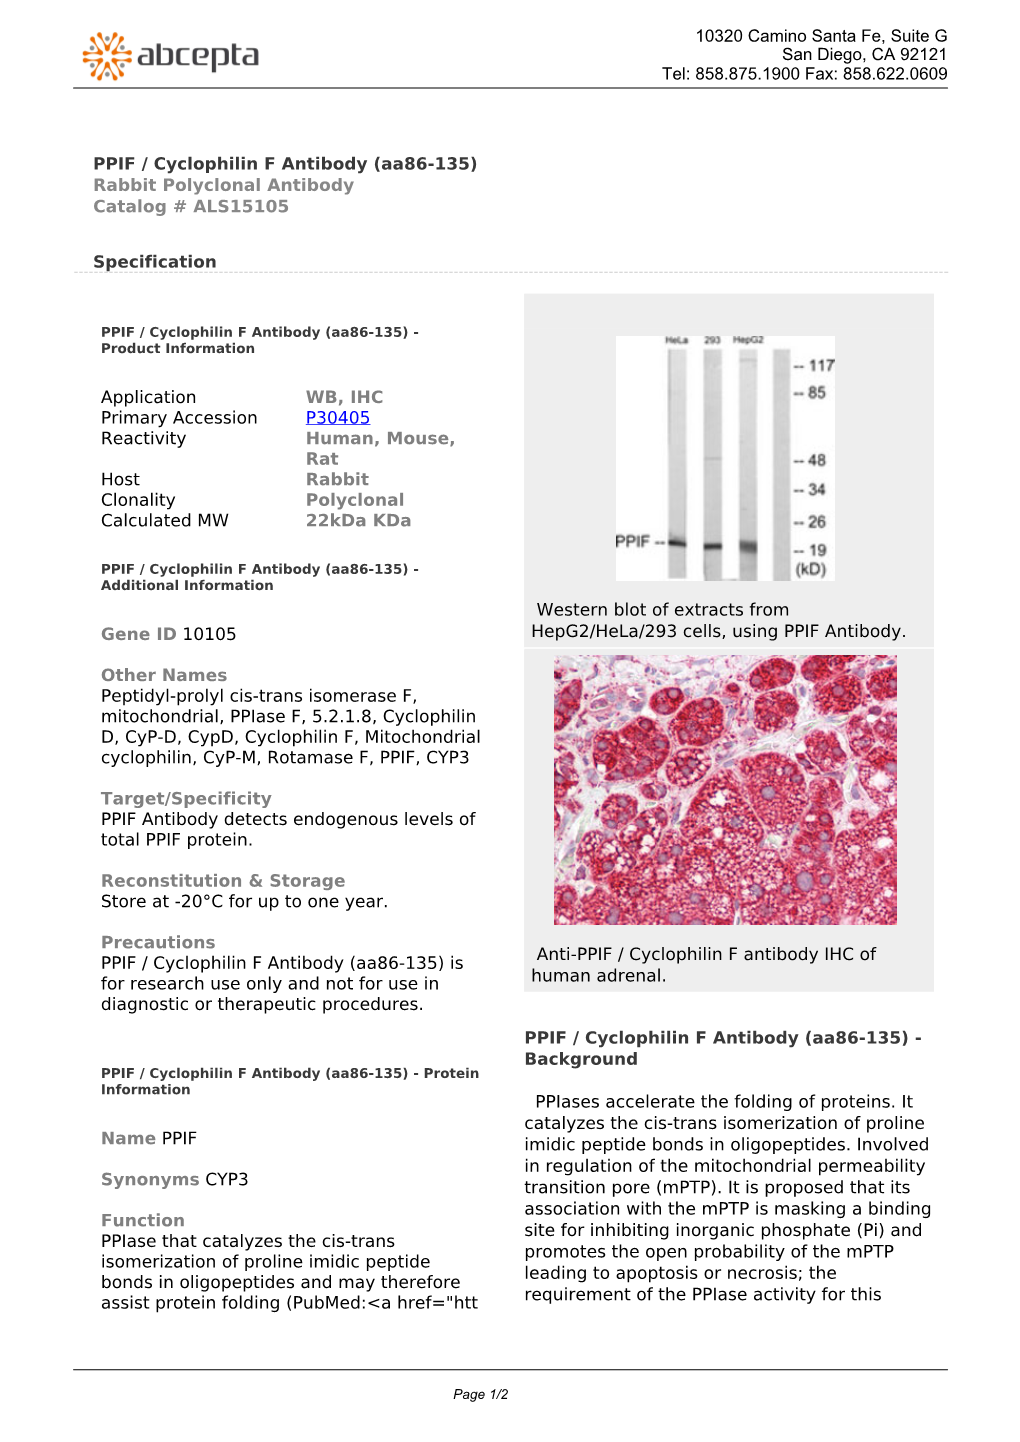 PPIF / Cyclophilin F Antibody (Aa86-135) Rabbit Polyclonal Antibody Catalog # ALS15105